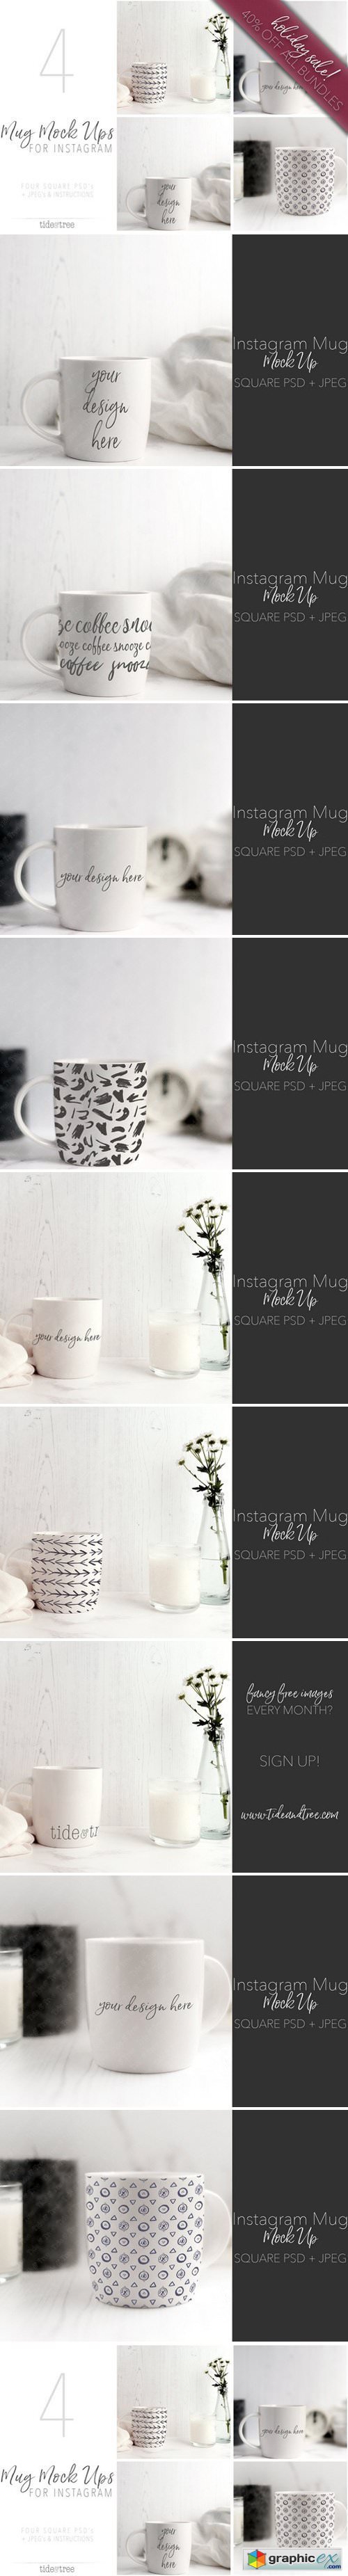 Mug Mock-Ups for Instagram